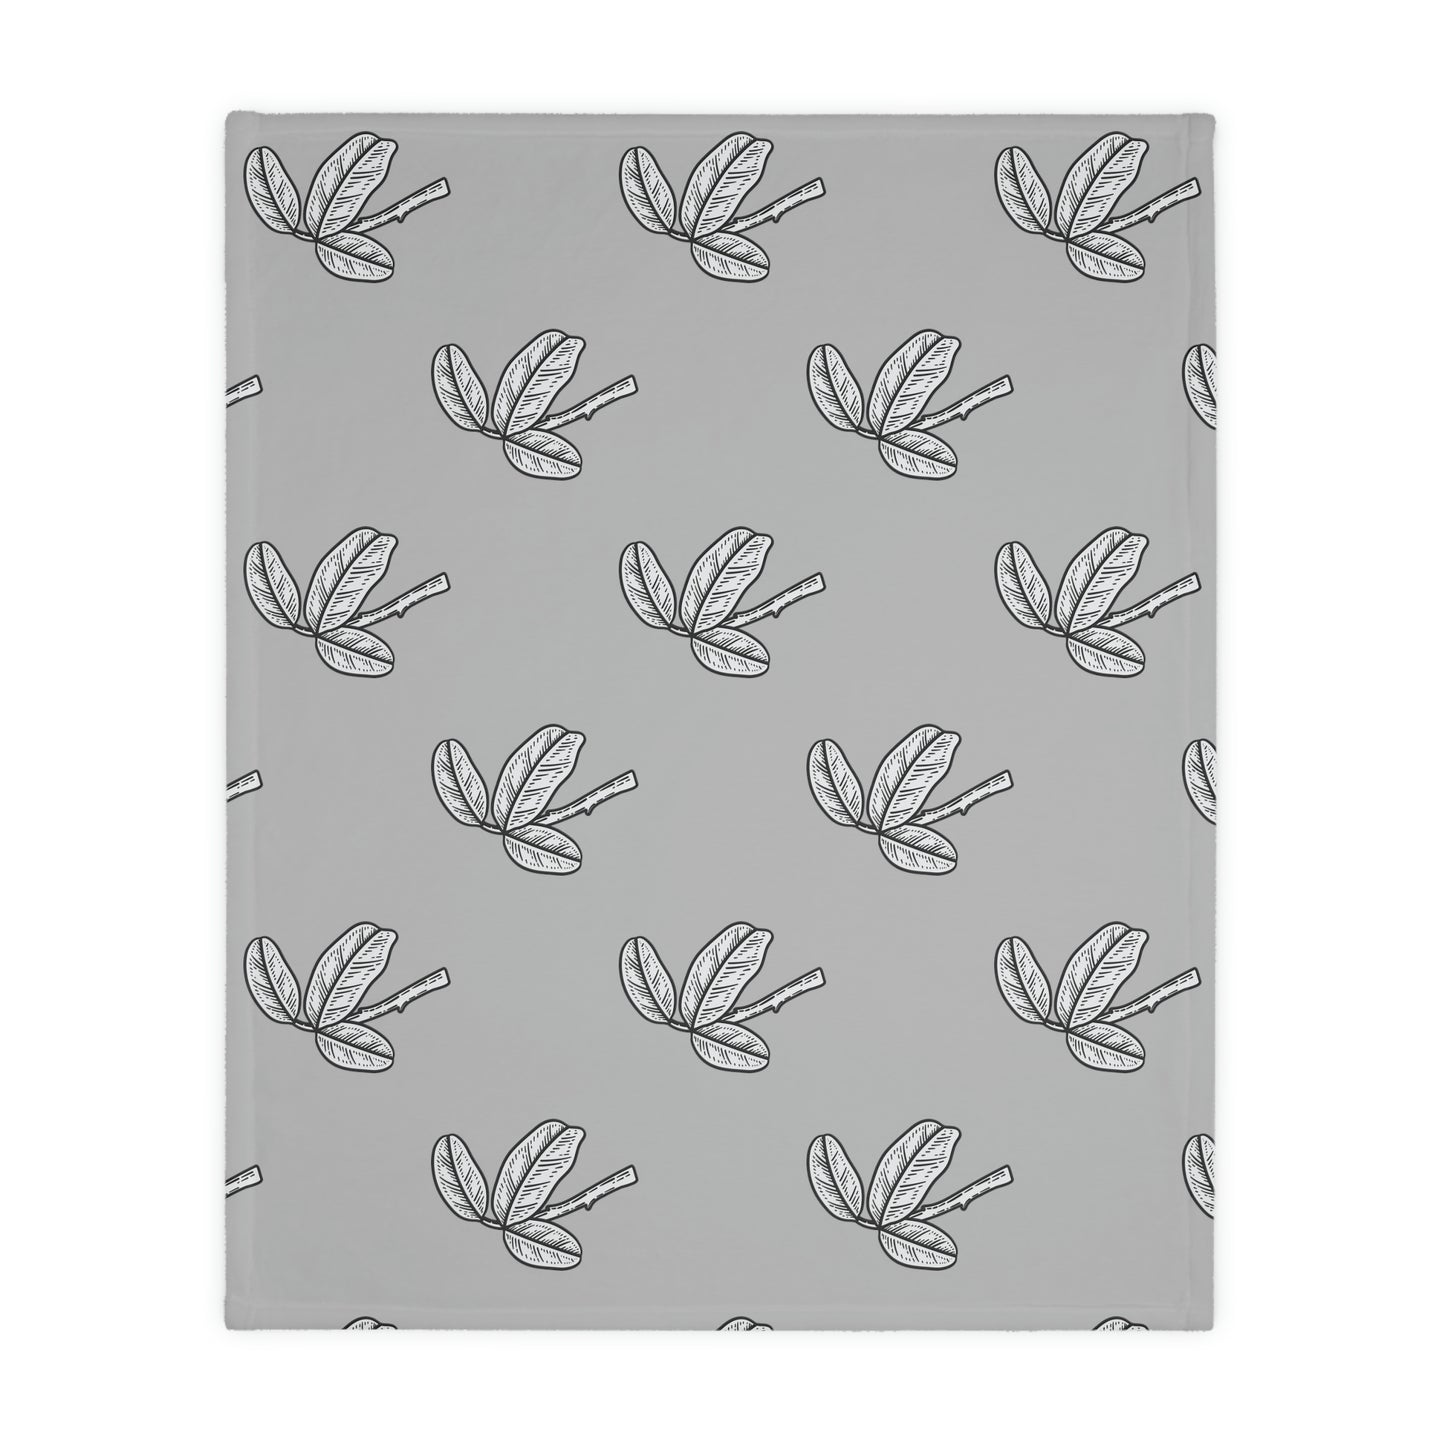 Bird Velveteen Minky Blanket (Two-sided print)